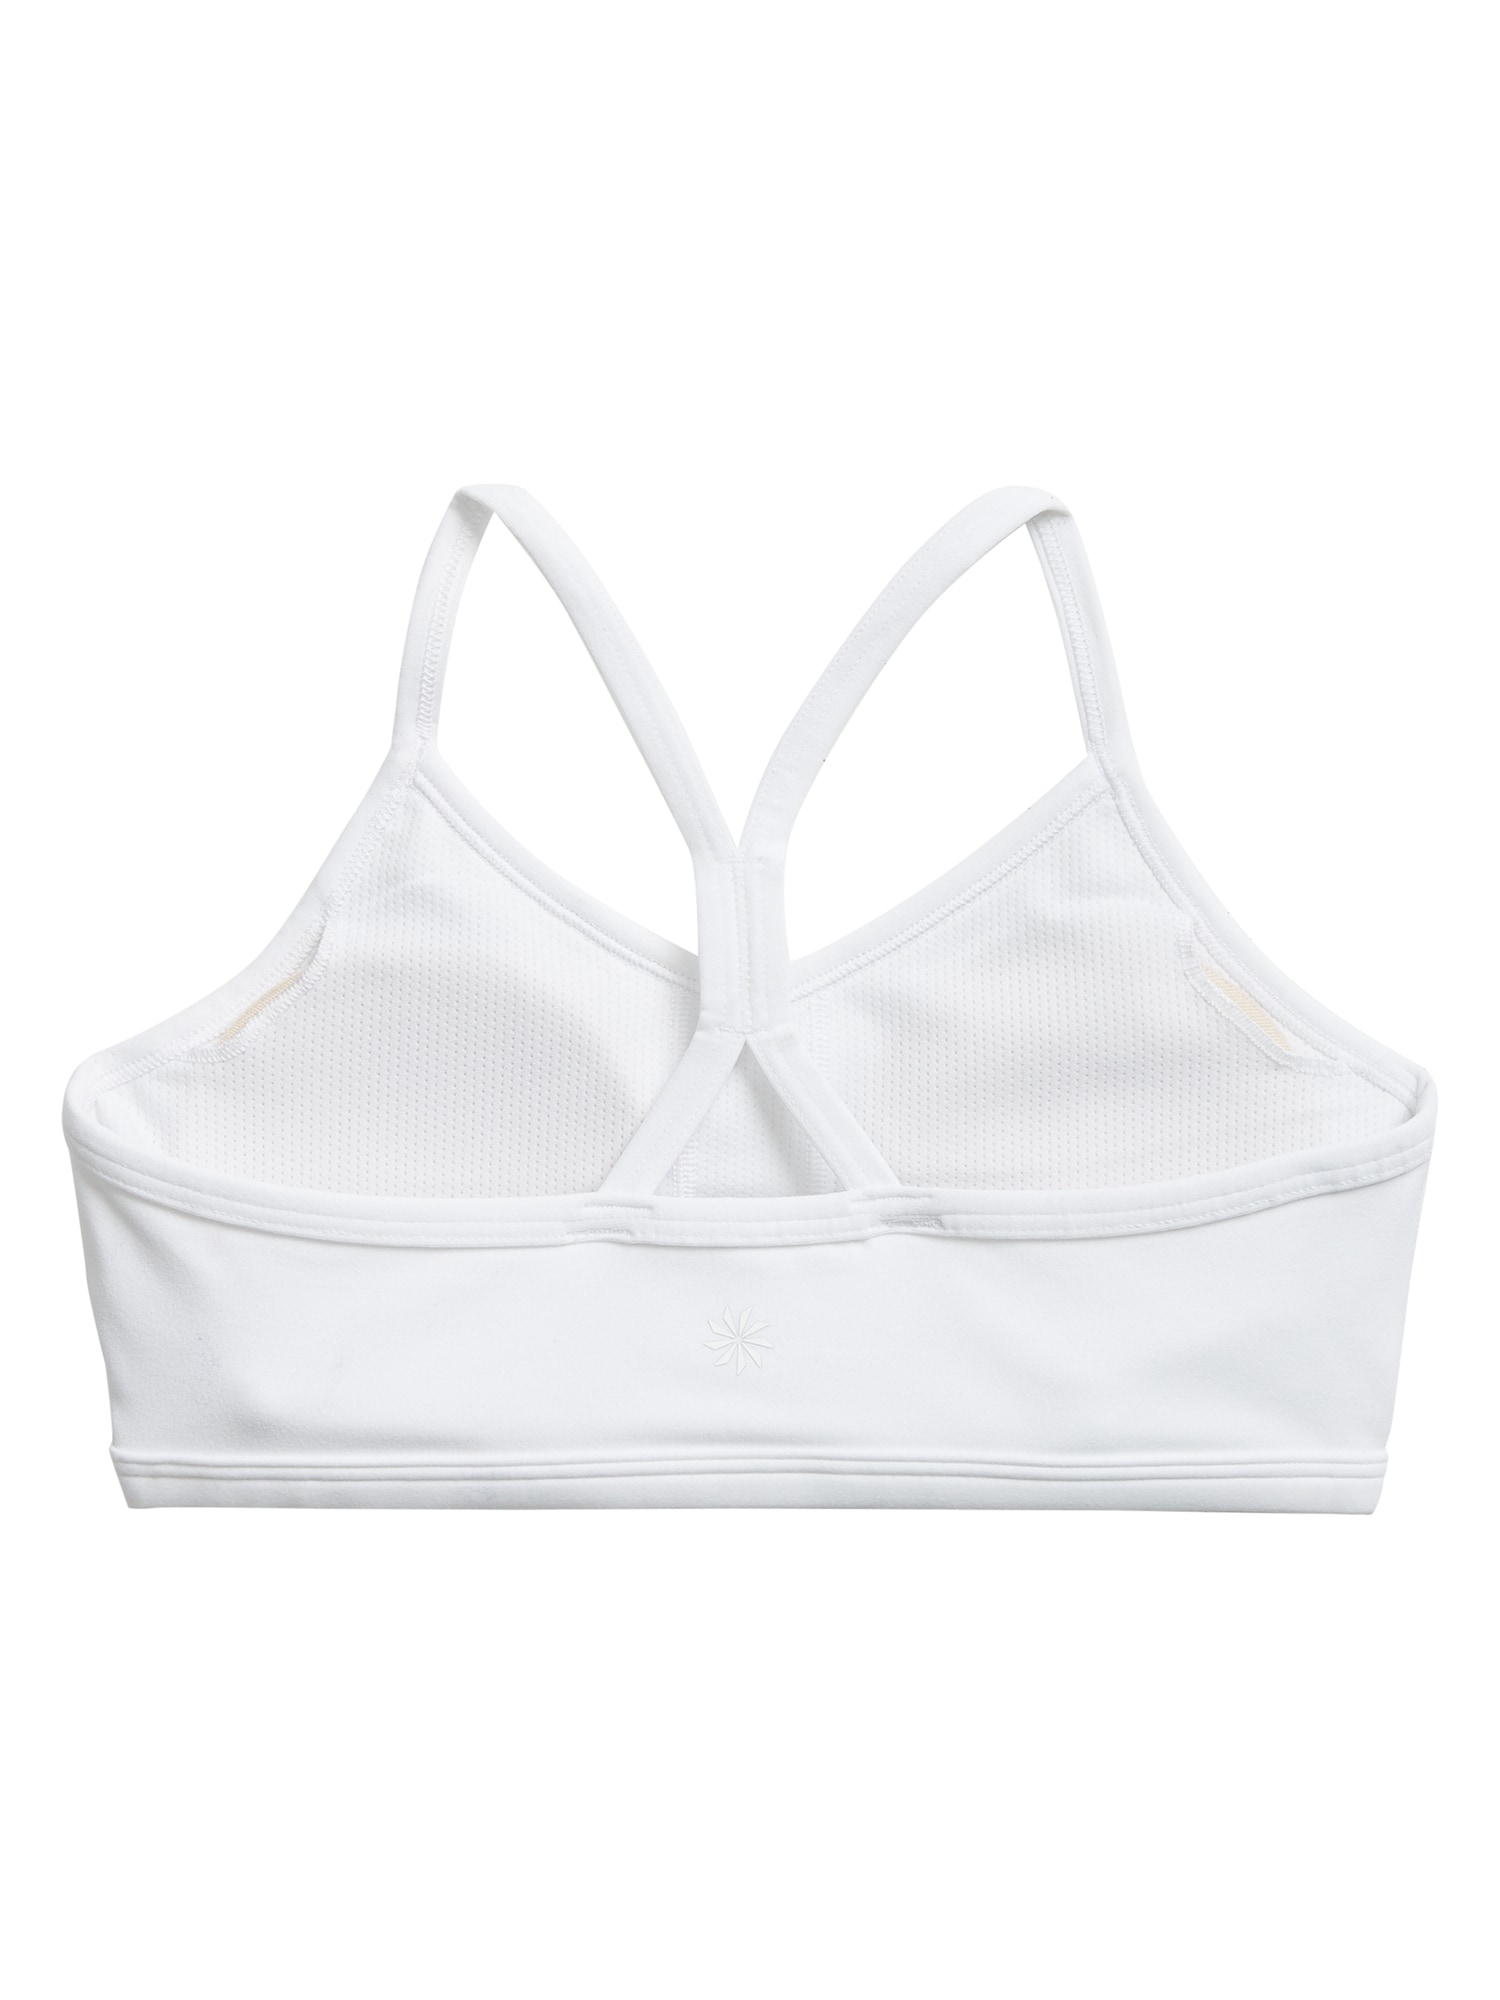 white bra 34A maidenform girls womens top halter carlsbad ca 92011